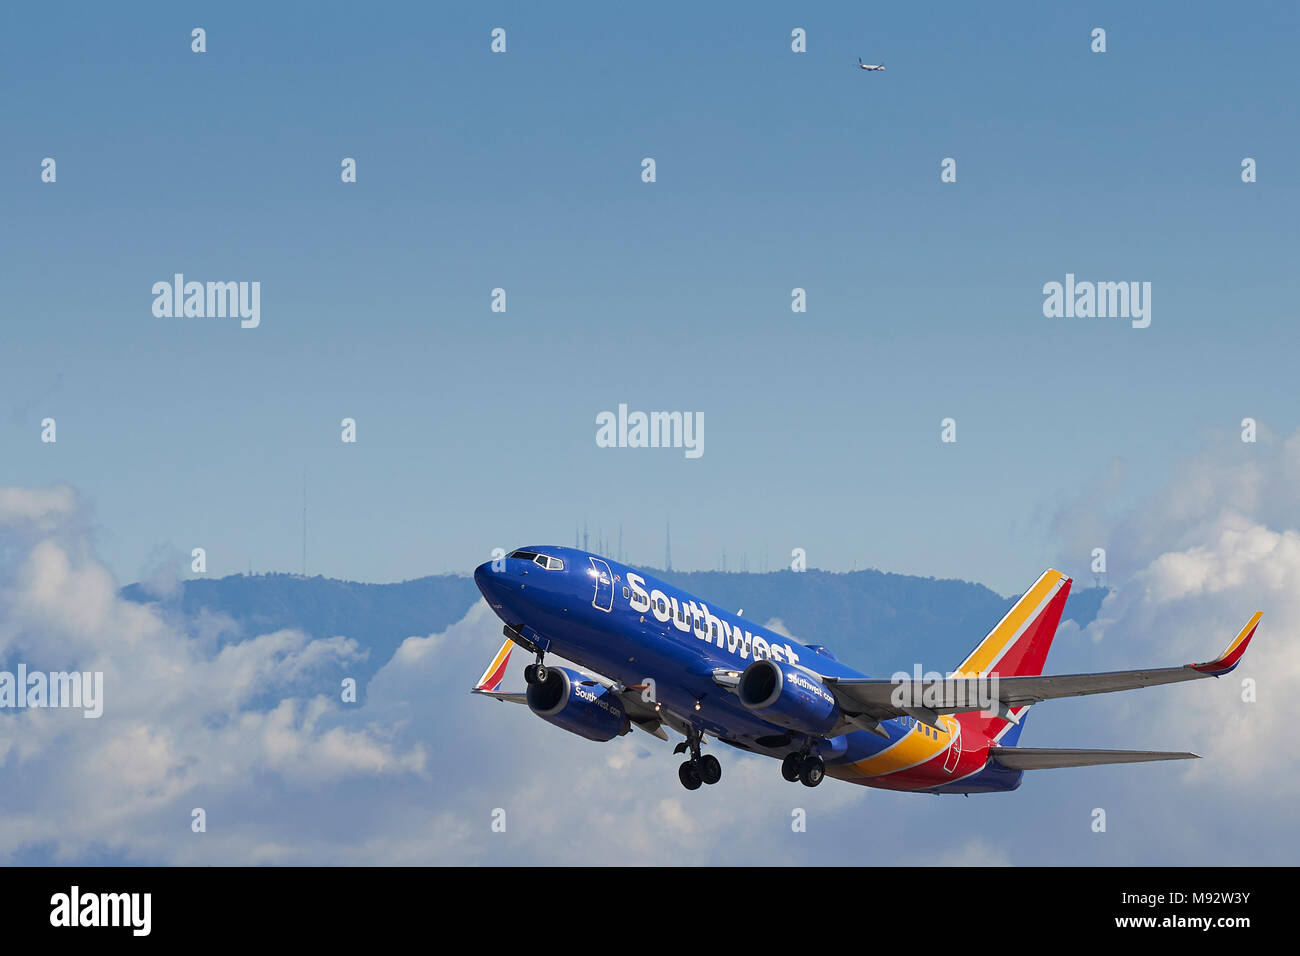 Southwest Airlines Boeing 737 avion de décoller de l'Aéroport International de Los Angeles, LAX, de nuages et de neige couverts montagnes San Gabriel derrière. Banque D'Images